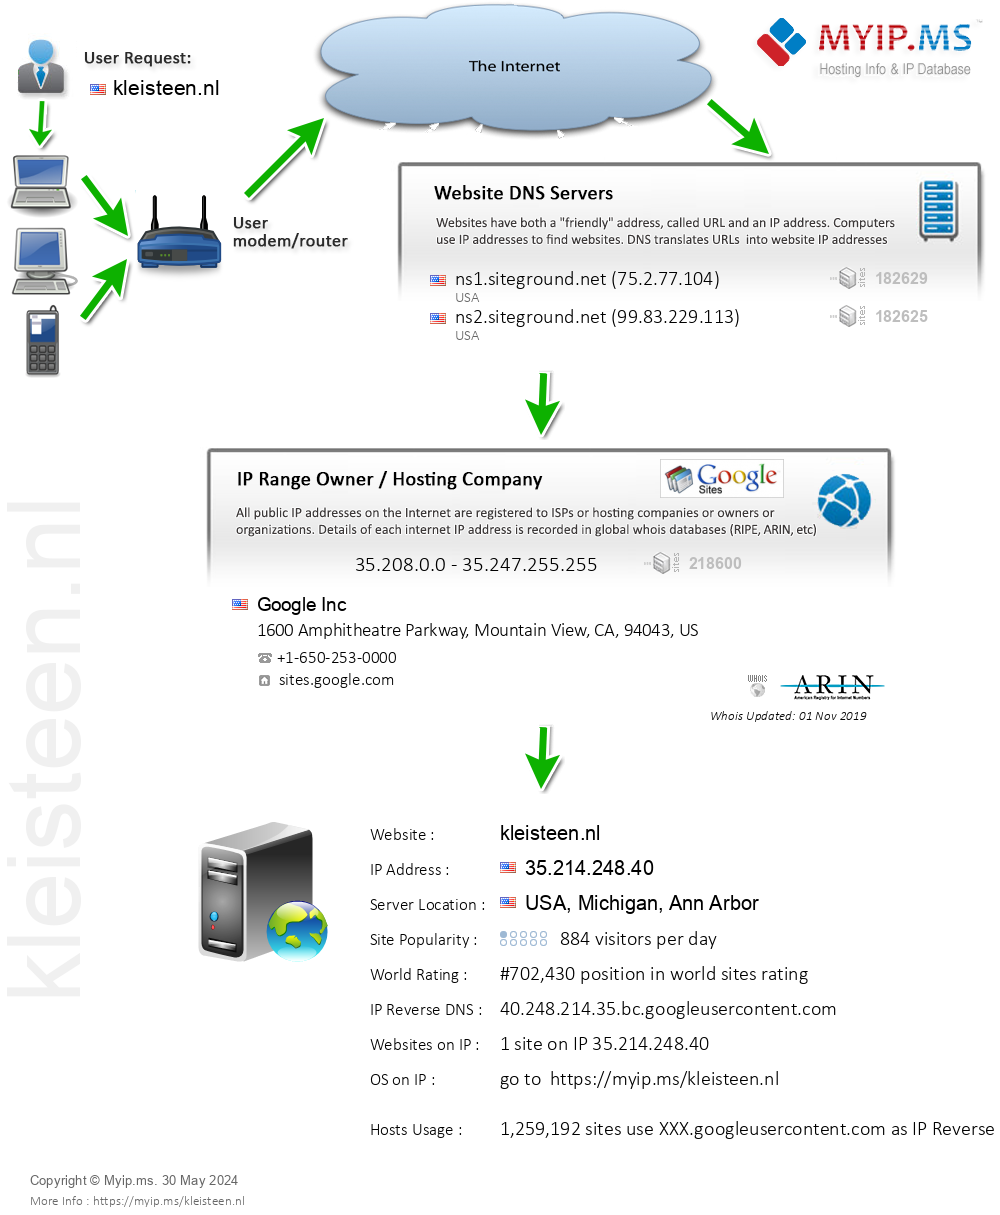 Kleisteen.nl - Website Hosting Visual IP Diagram